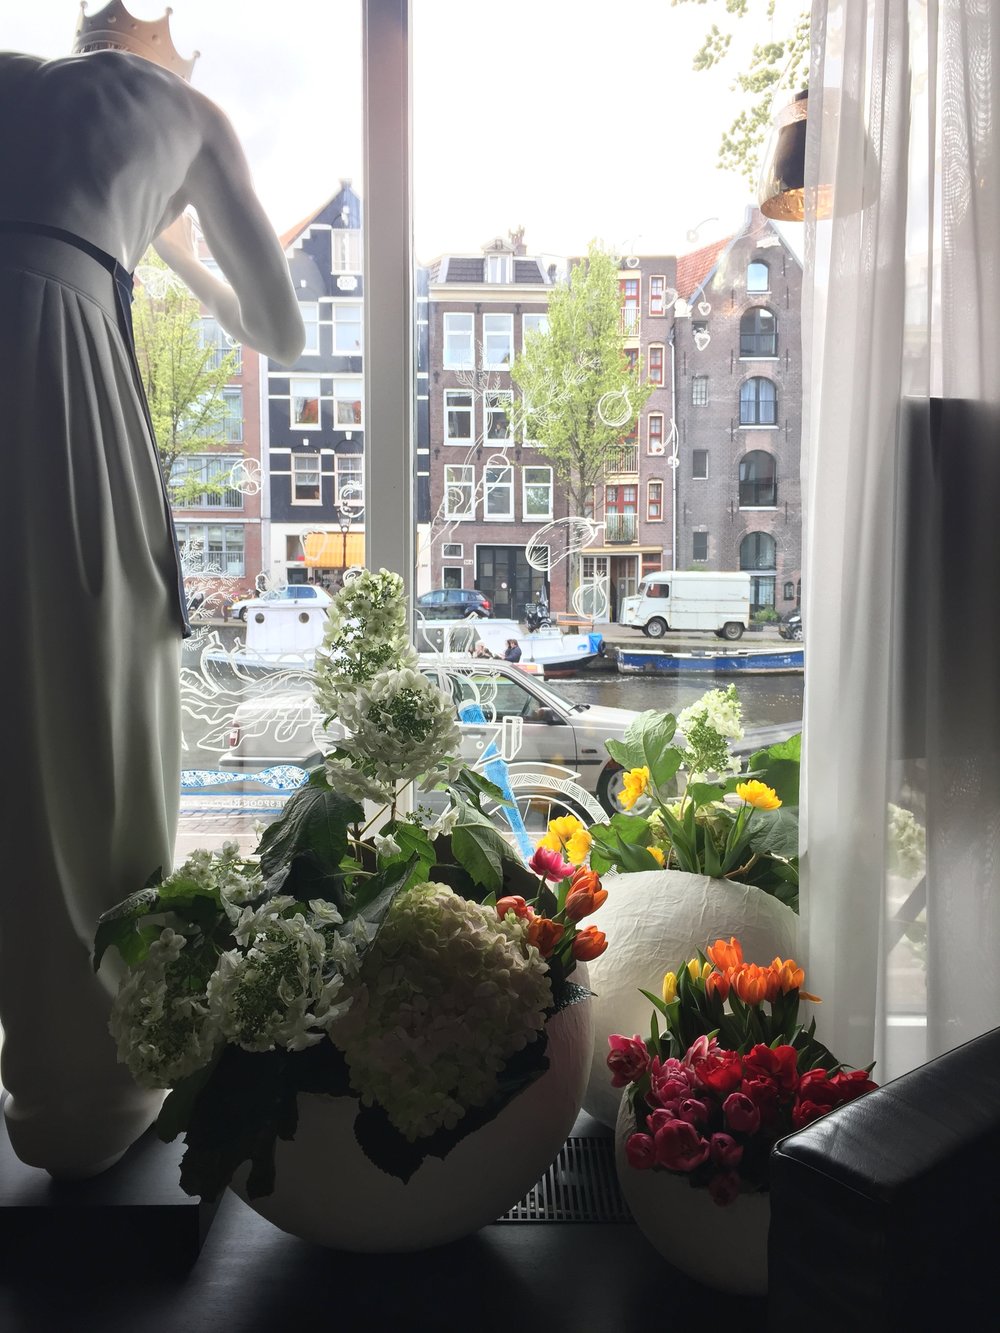 . . . . . #apbloem #florist #amsterdam #bloemist #kerkstraat #bloemen #stijl #styling #floristry #bloemenwinkel #floral #artisan #boutique #kleur #colour #lifestyle #lente #spring #dsfloral #nature #eggs #easter #tulips #luxury #marcelwanders #paasd…